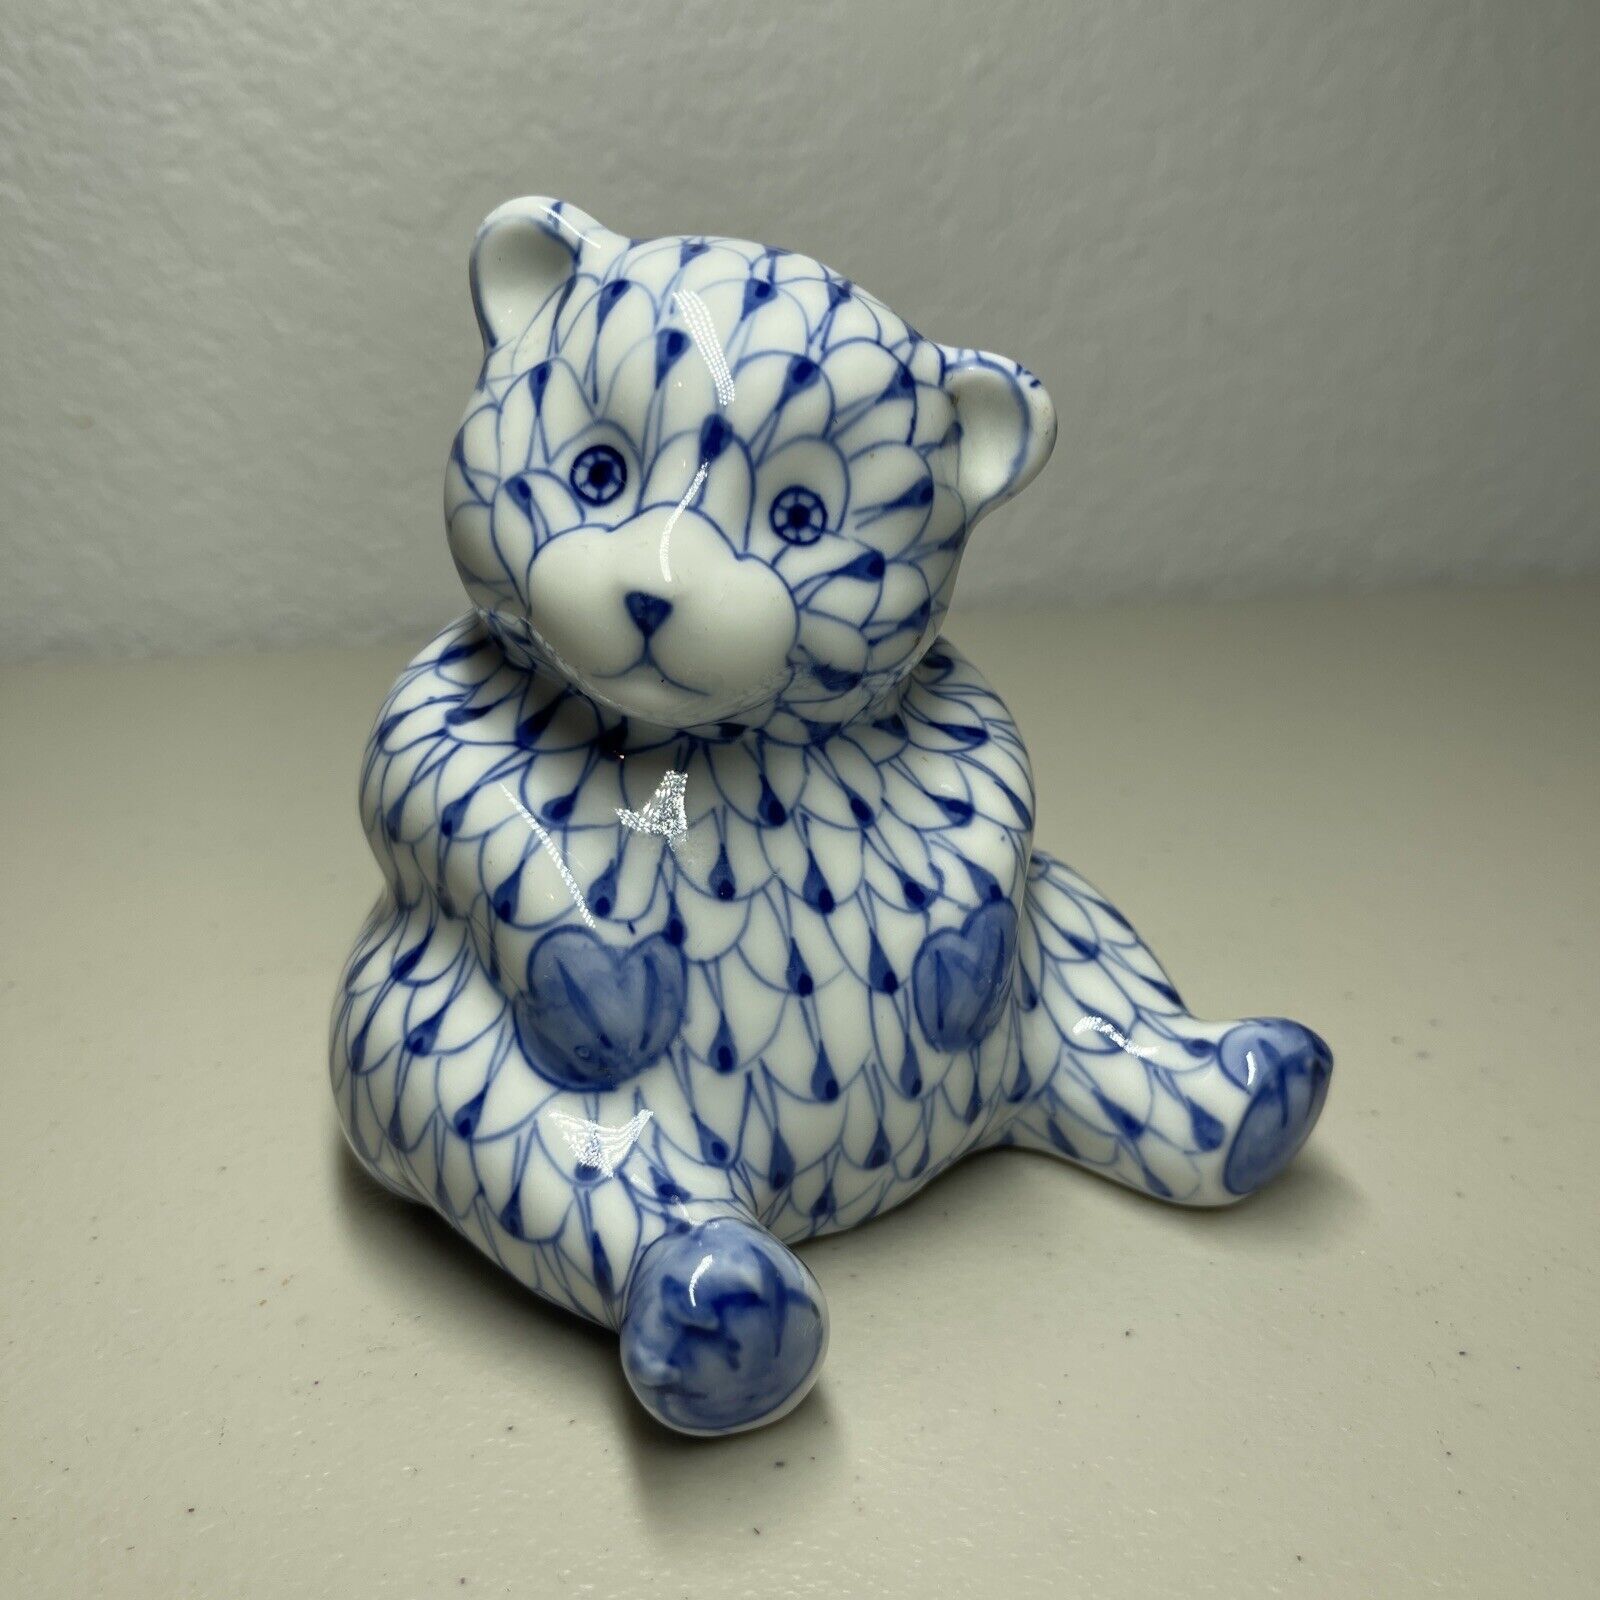 Vtg Andrea by Sadek Chubby Bear Figurine Blue & White Fishnet Hand Painted 4”